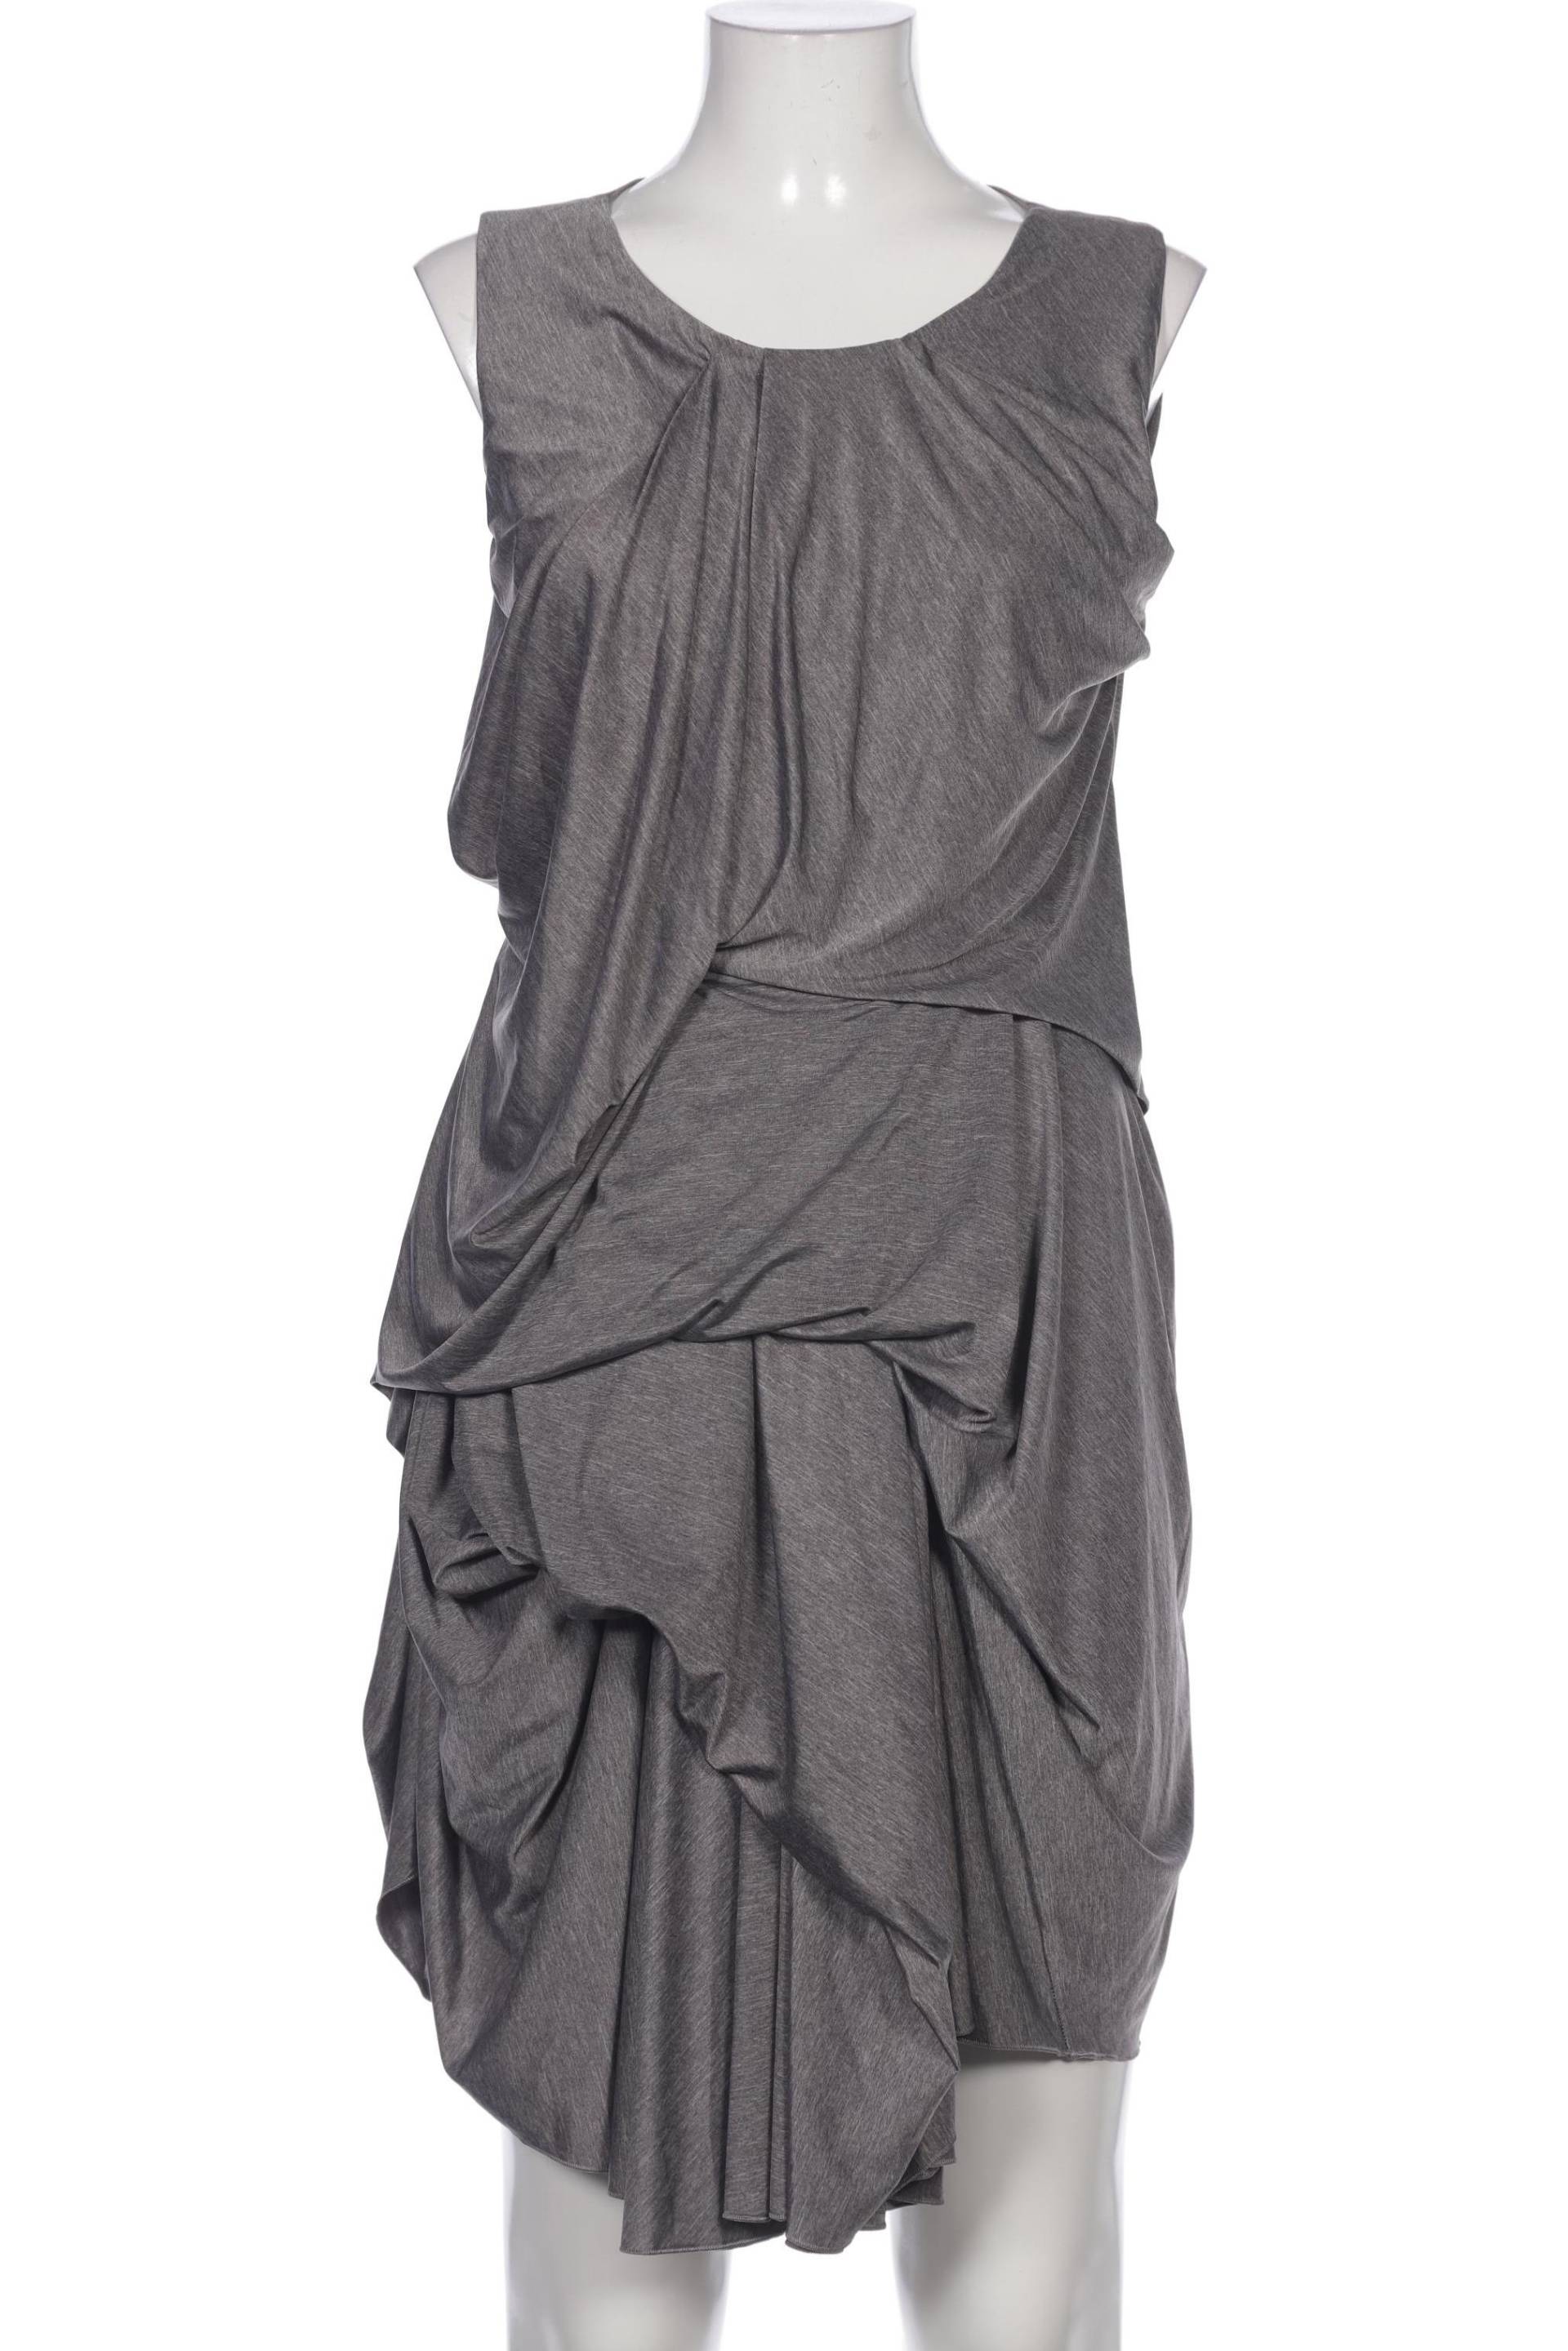 COS Damen Kleid, grau, Gr. 40 von COS